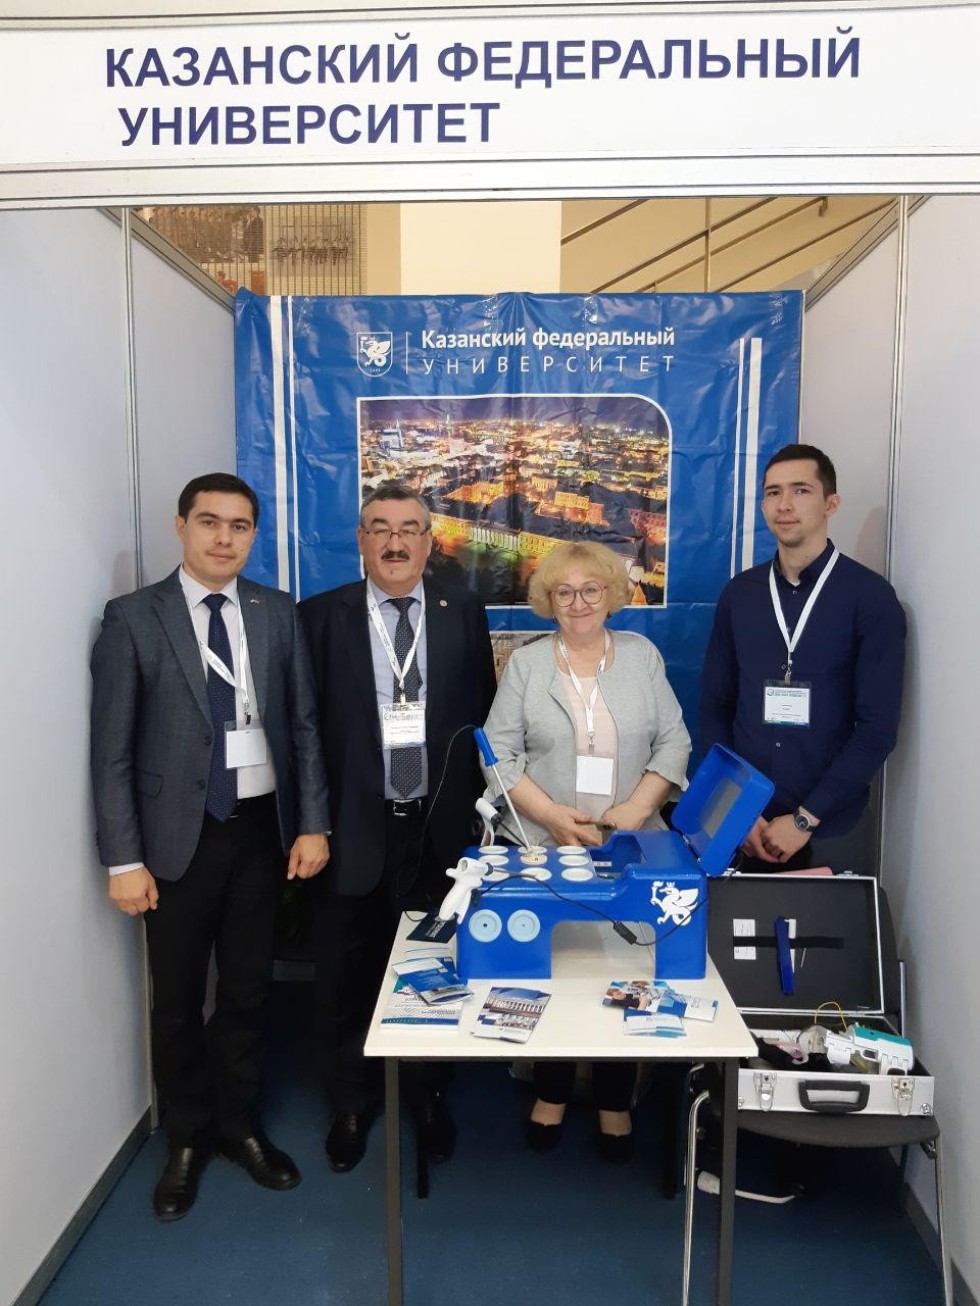     II -    'Expo-Russia Uzbekistan-2019'